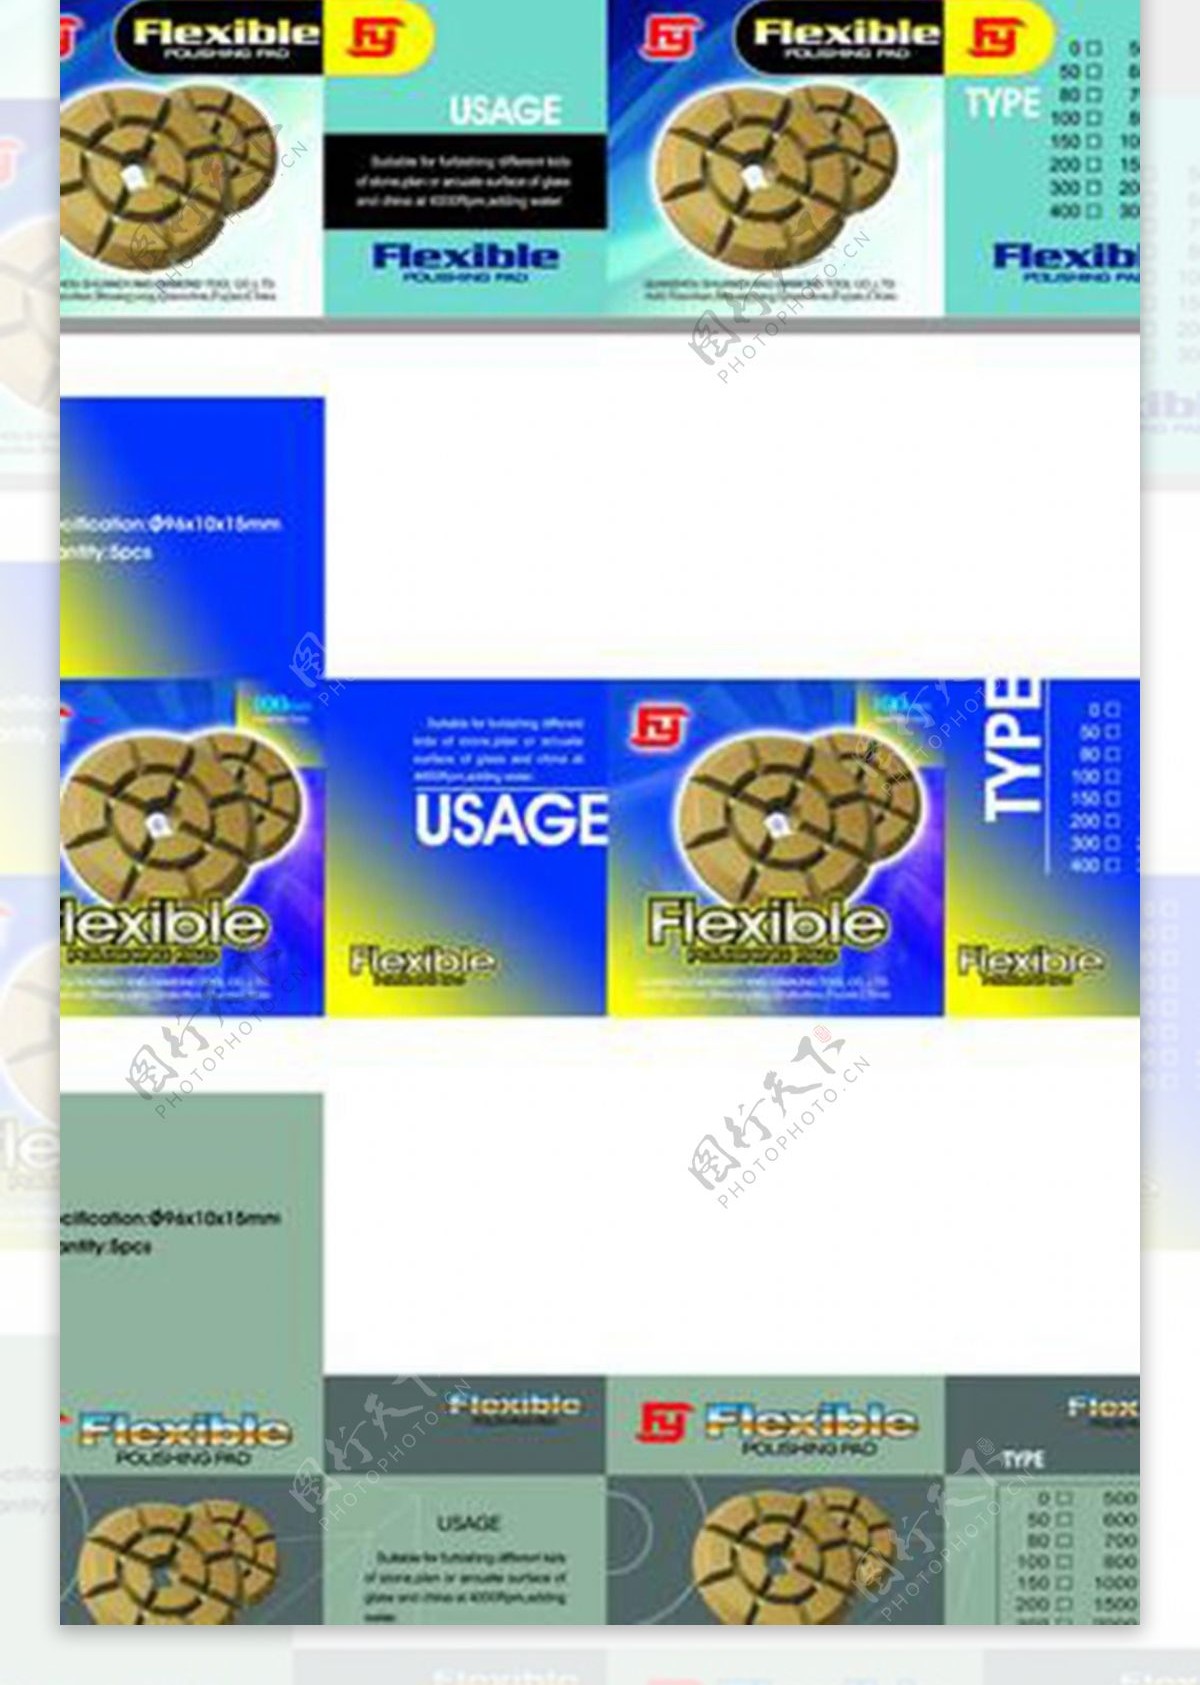 切片包装图片模板下载装设计切片多款切片包装包装设计广告设计模板源文件300dpipsd